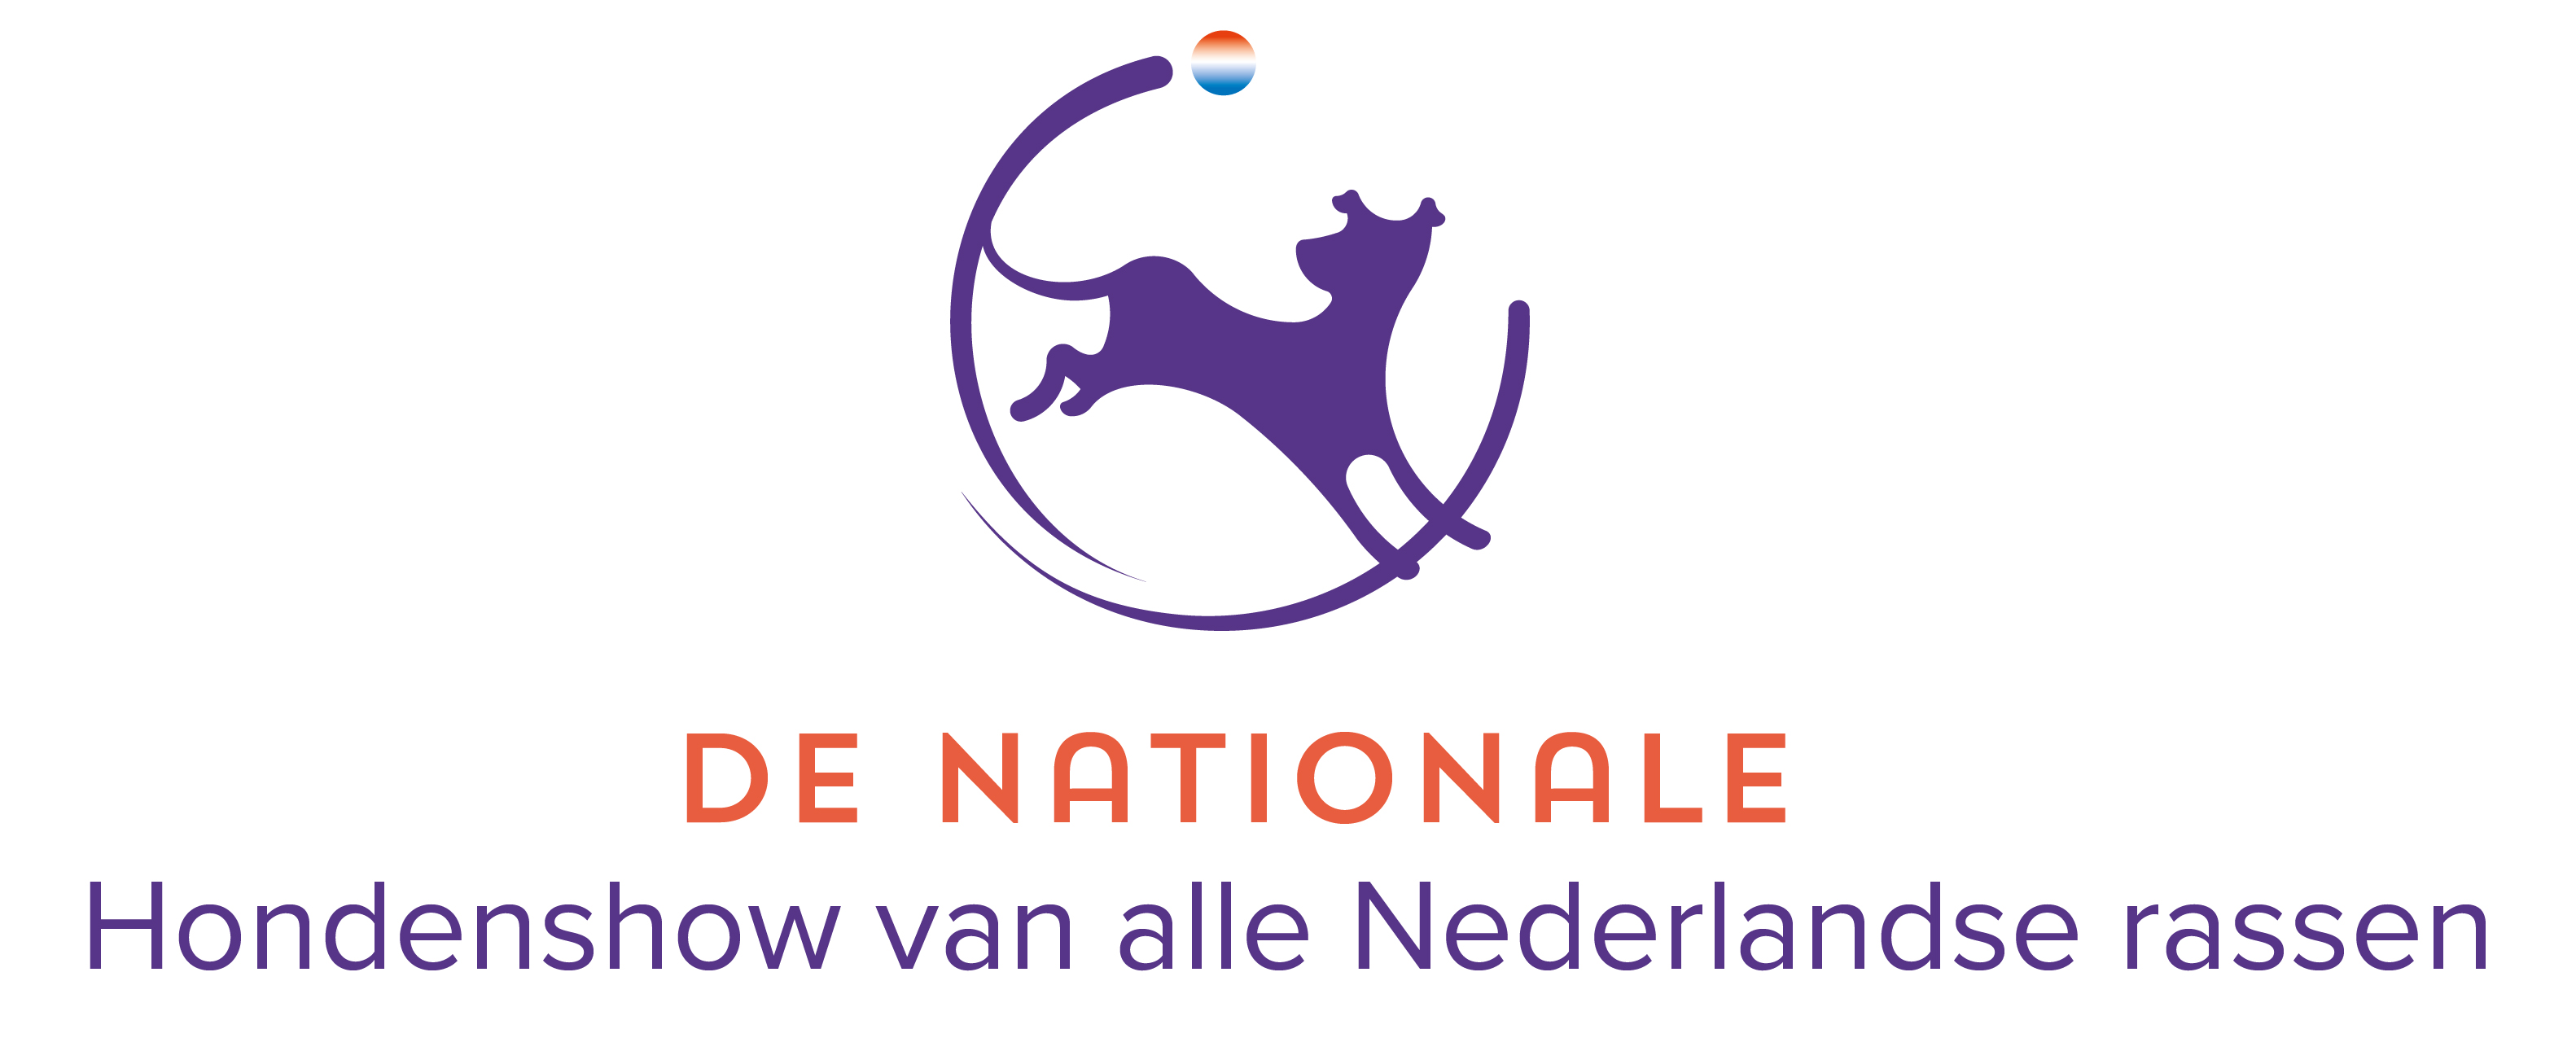 logo de nationale hondenshow voor Nederlandse hondenrassen